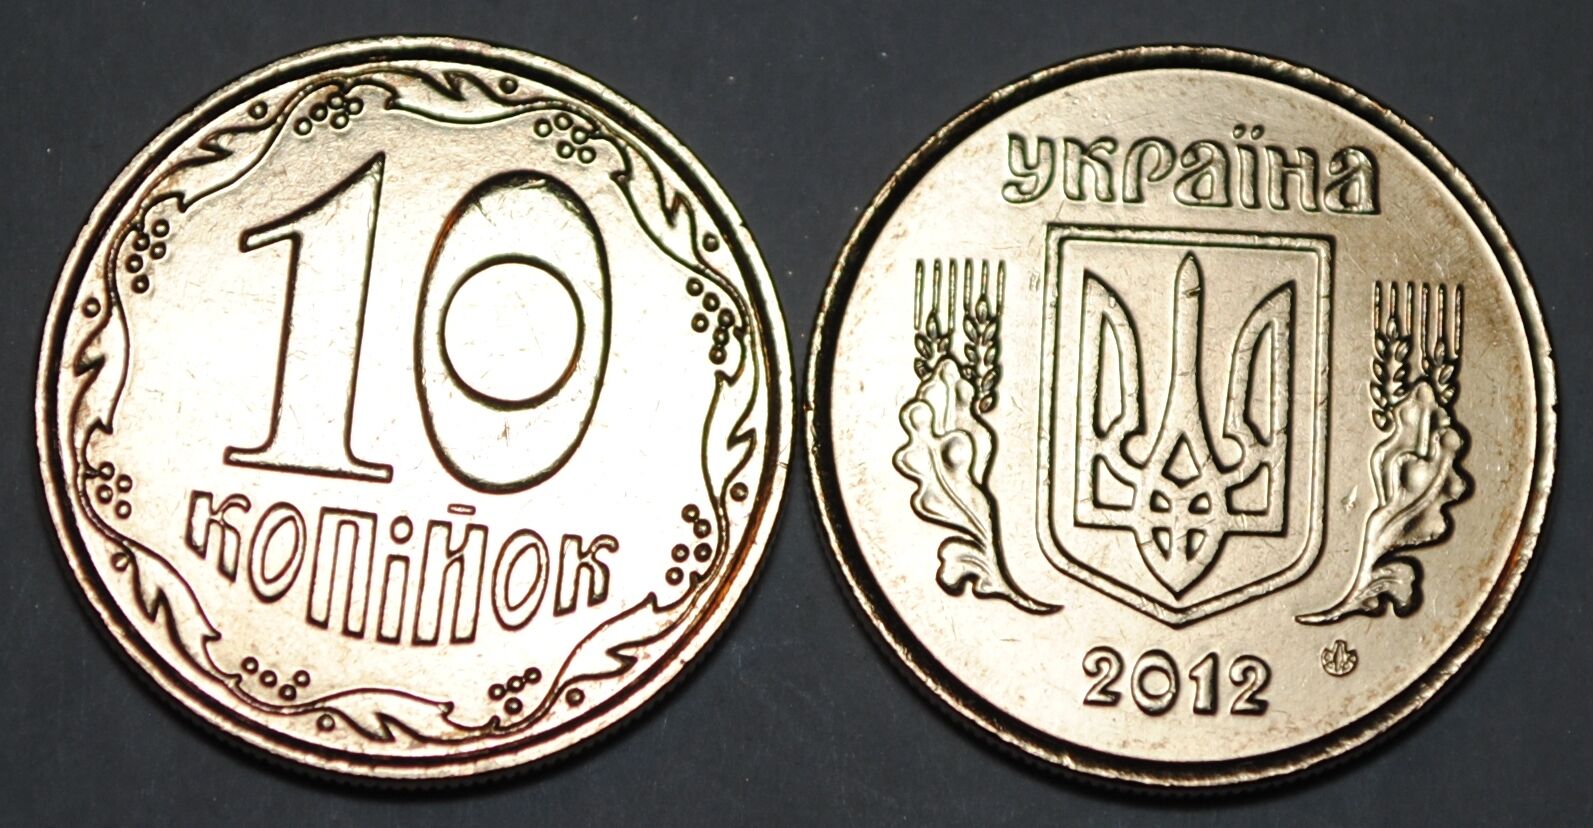 2012 Ukraine 10 Kopiyok Coin BU Very Nice  KM# 1.1b